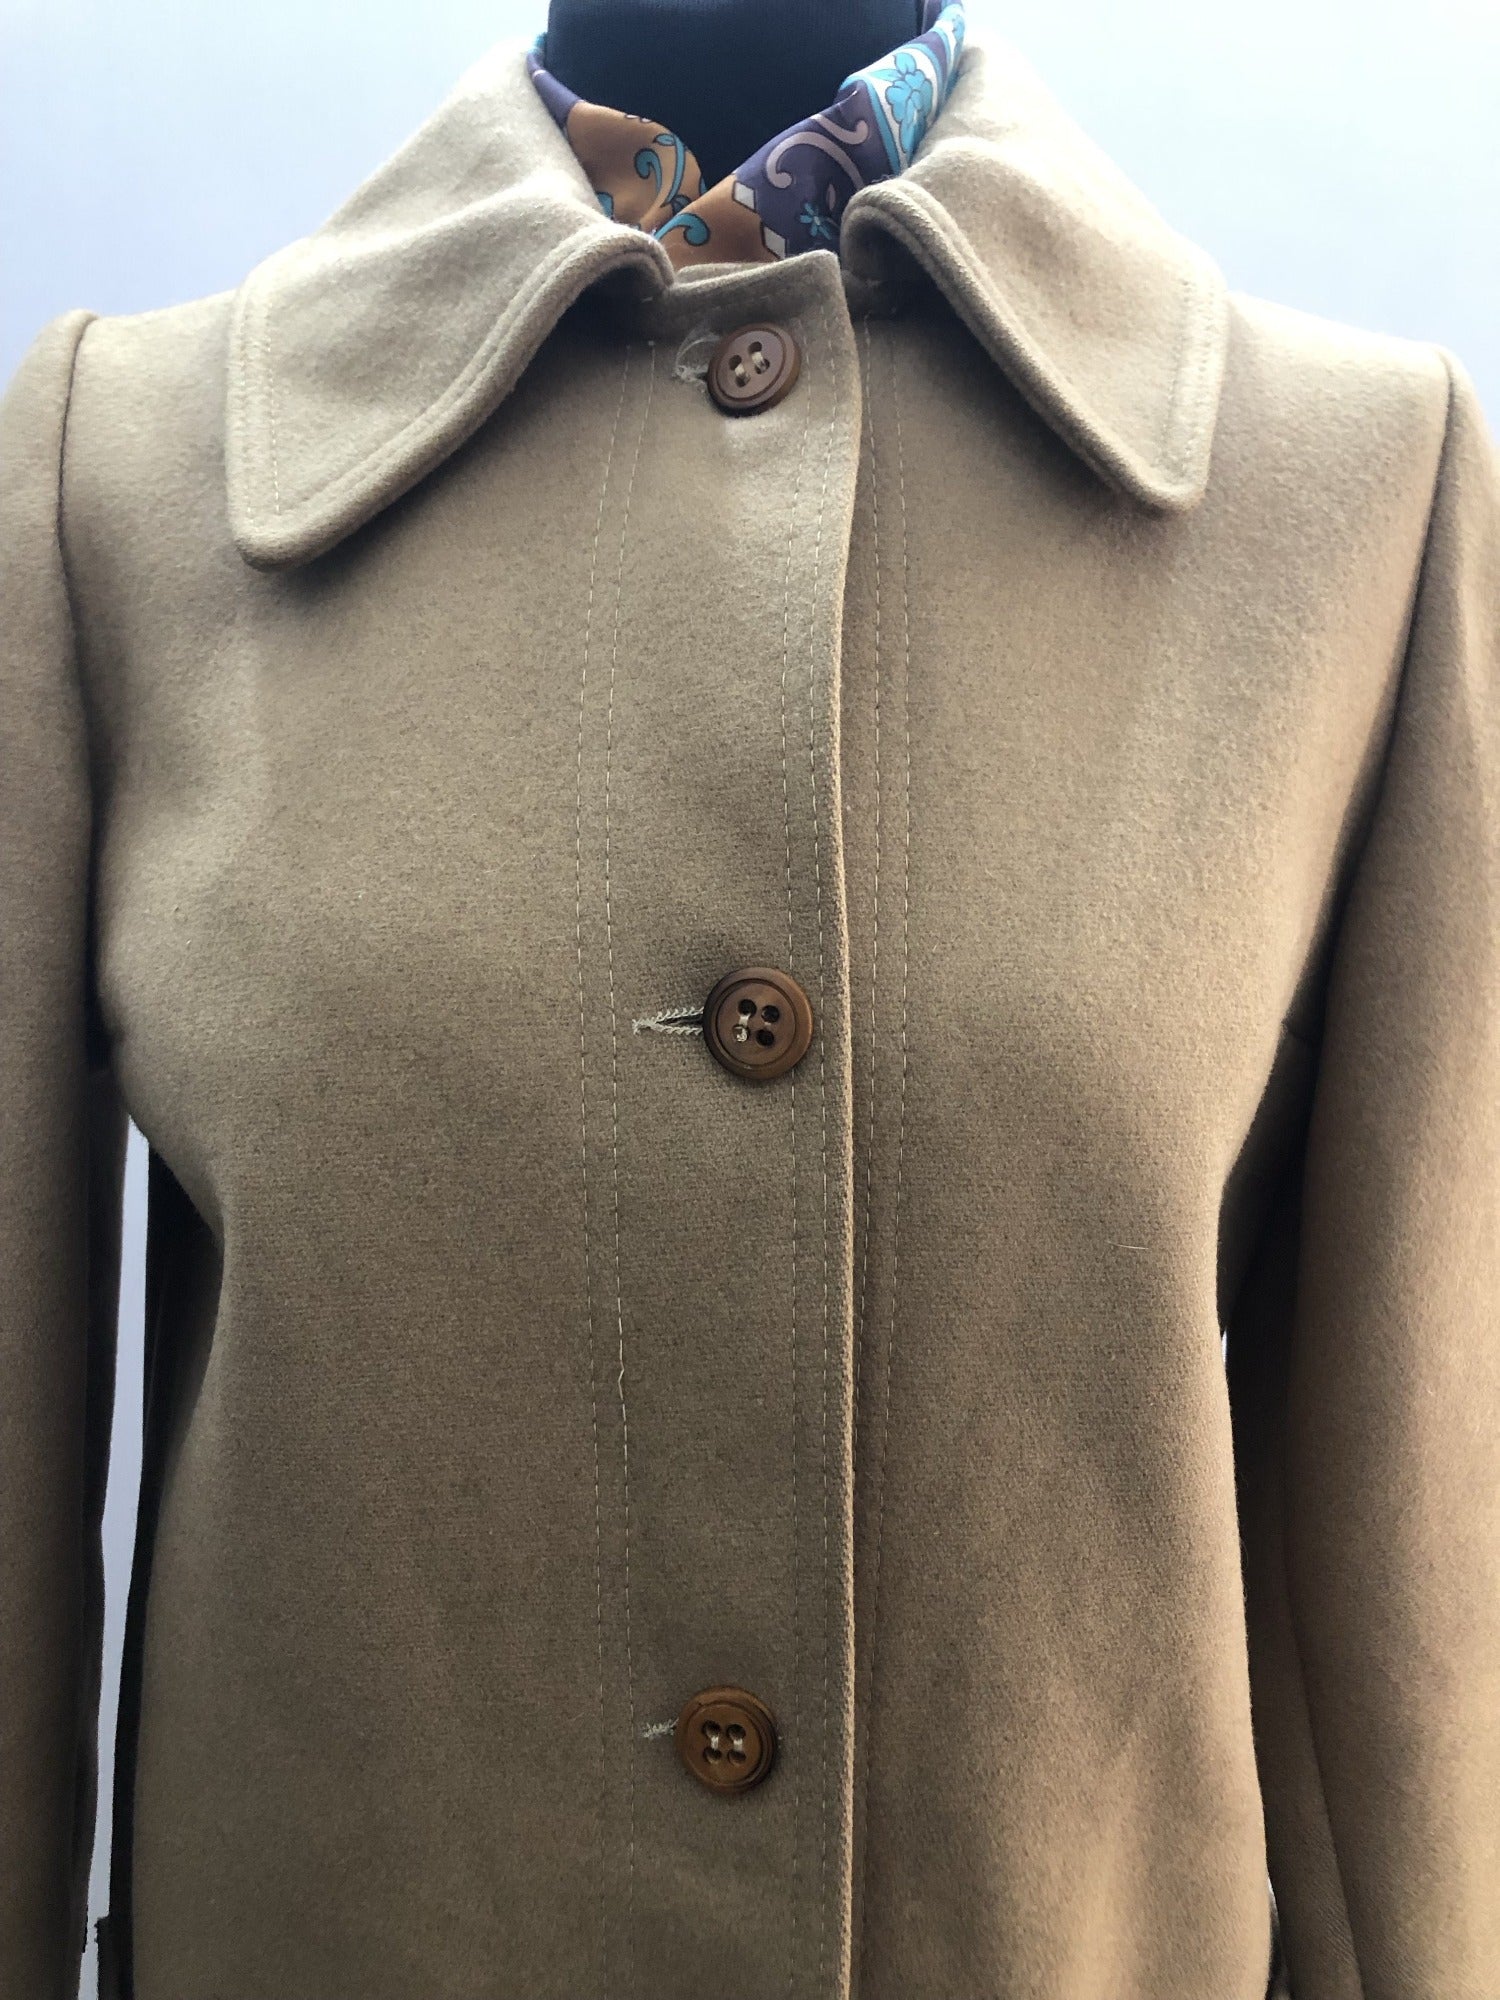 1960s Wool Coat by Michel Beaudouin - Size UK 12 - 12